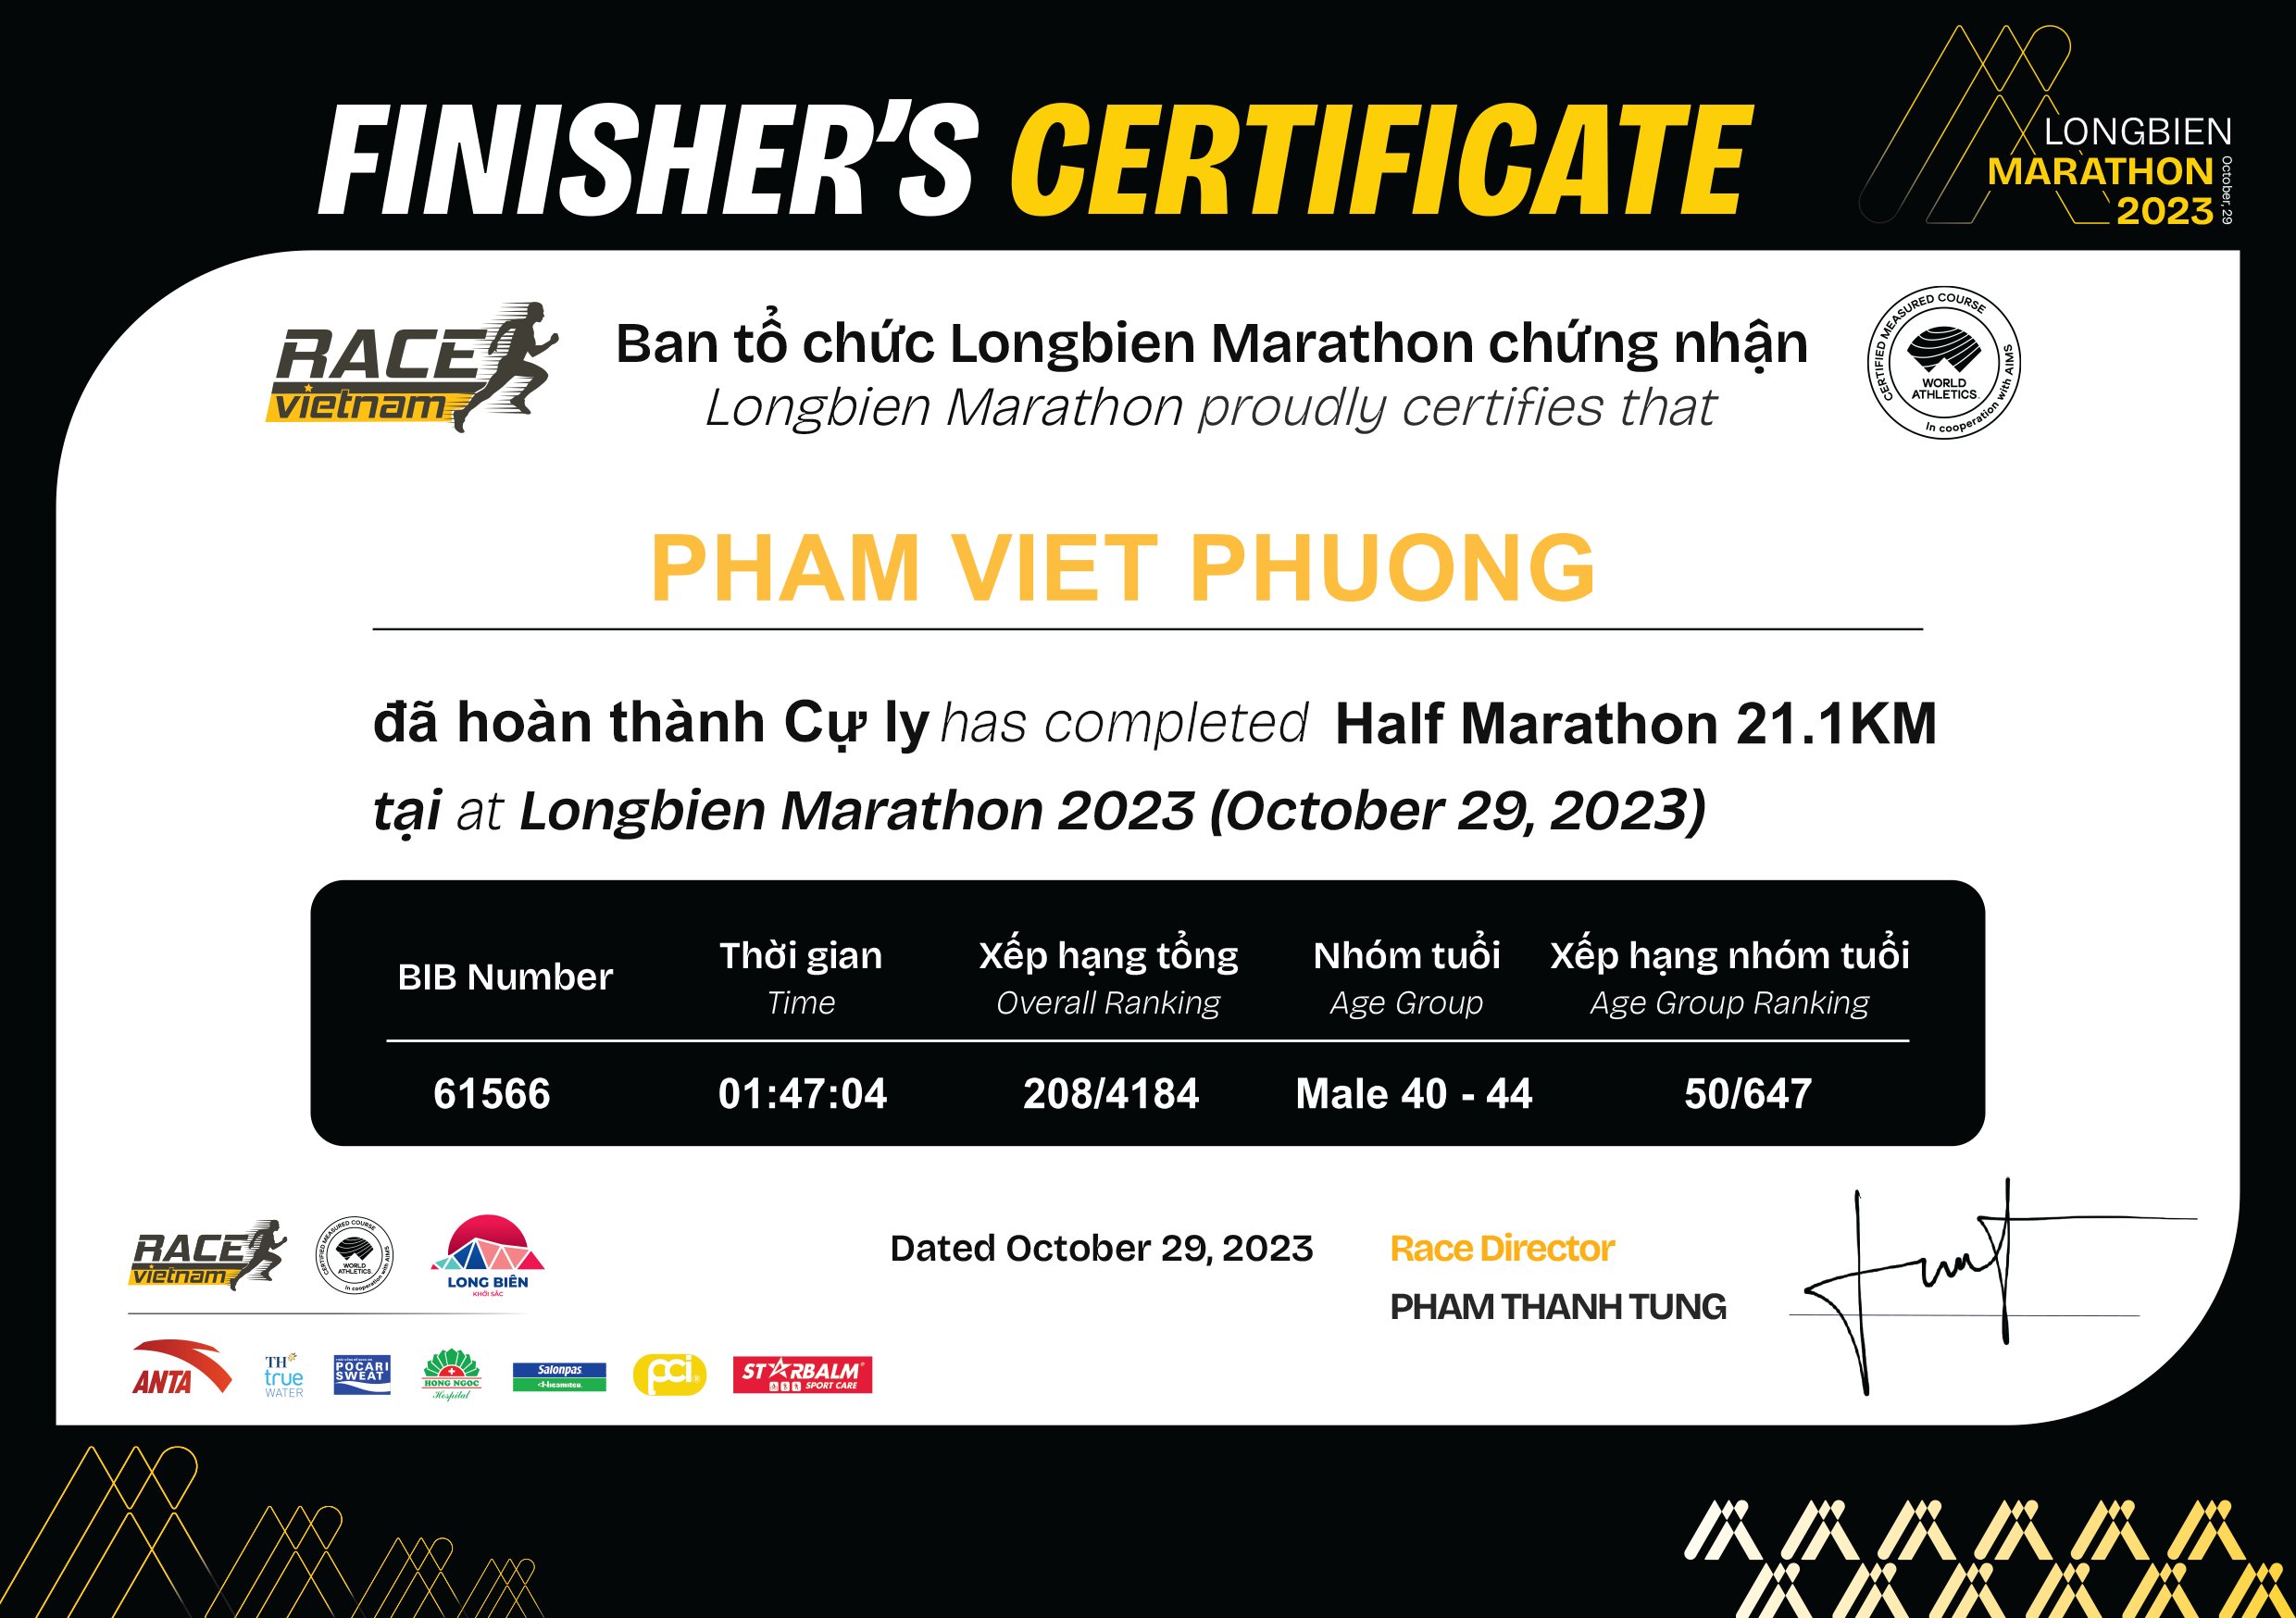 61566 - Pham Viet Phuong